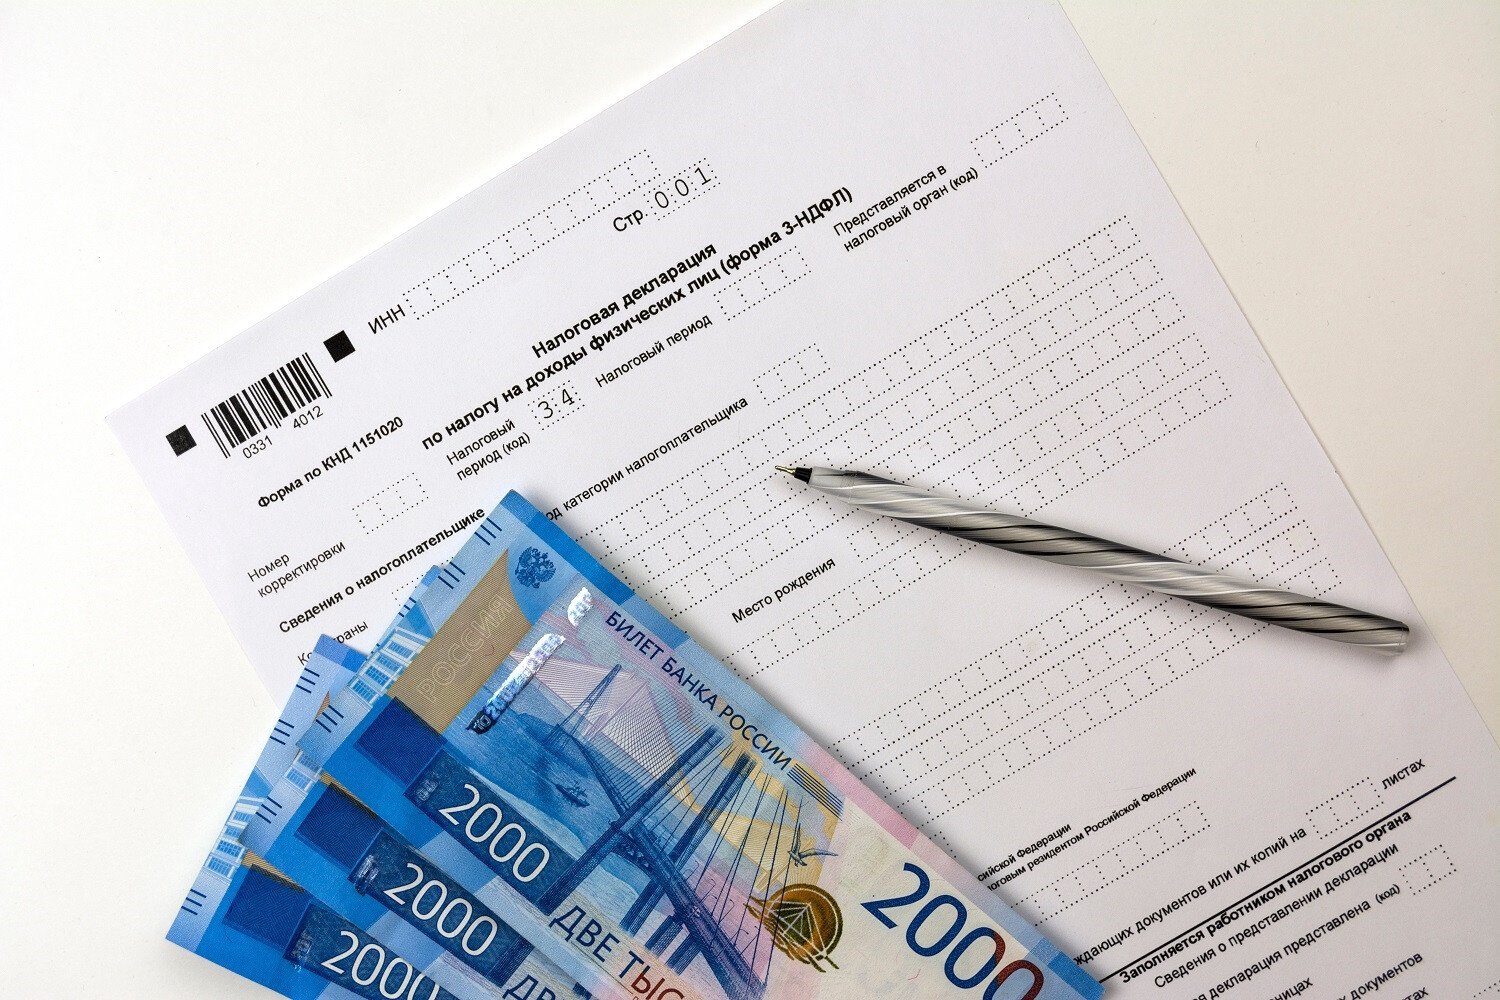 المواطنون الروس معرّضون لـ “دفع ضرائب على أرباحهم من العملات الرقمية” على الرّغم من عدم الاعتراف بهذه العملات قانونياً في روسيا